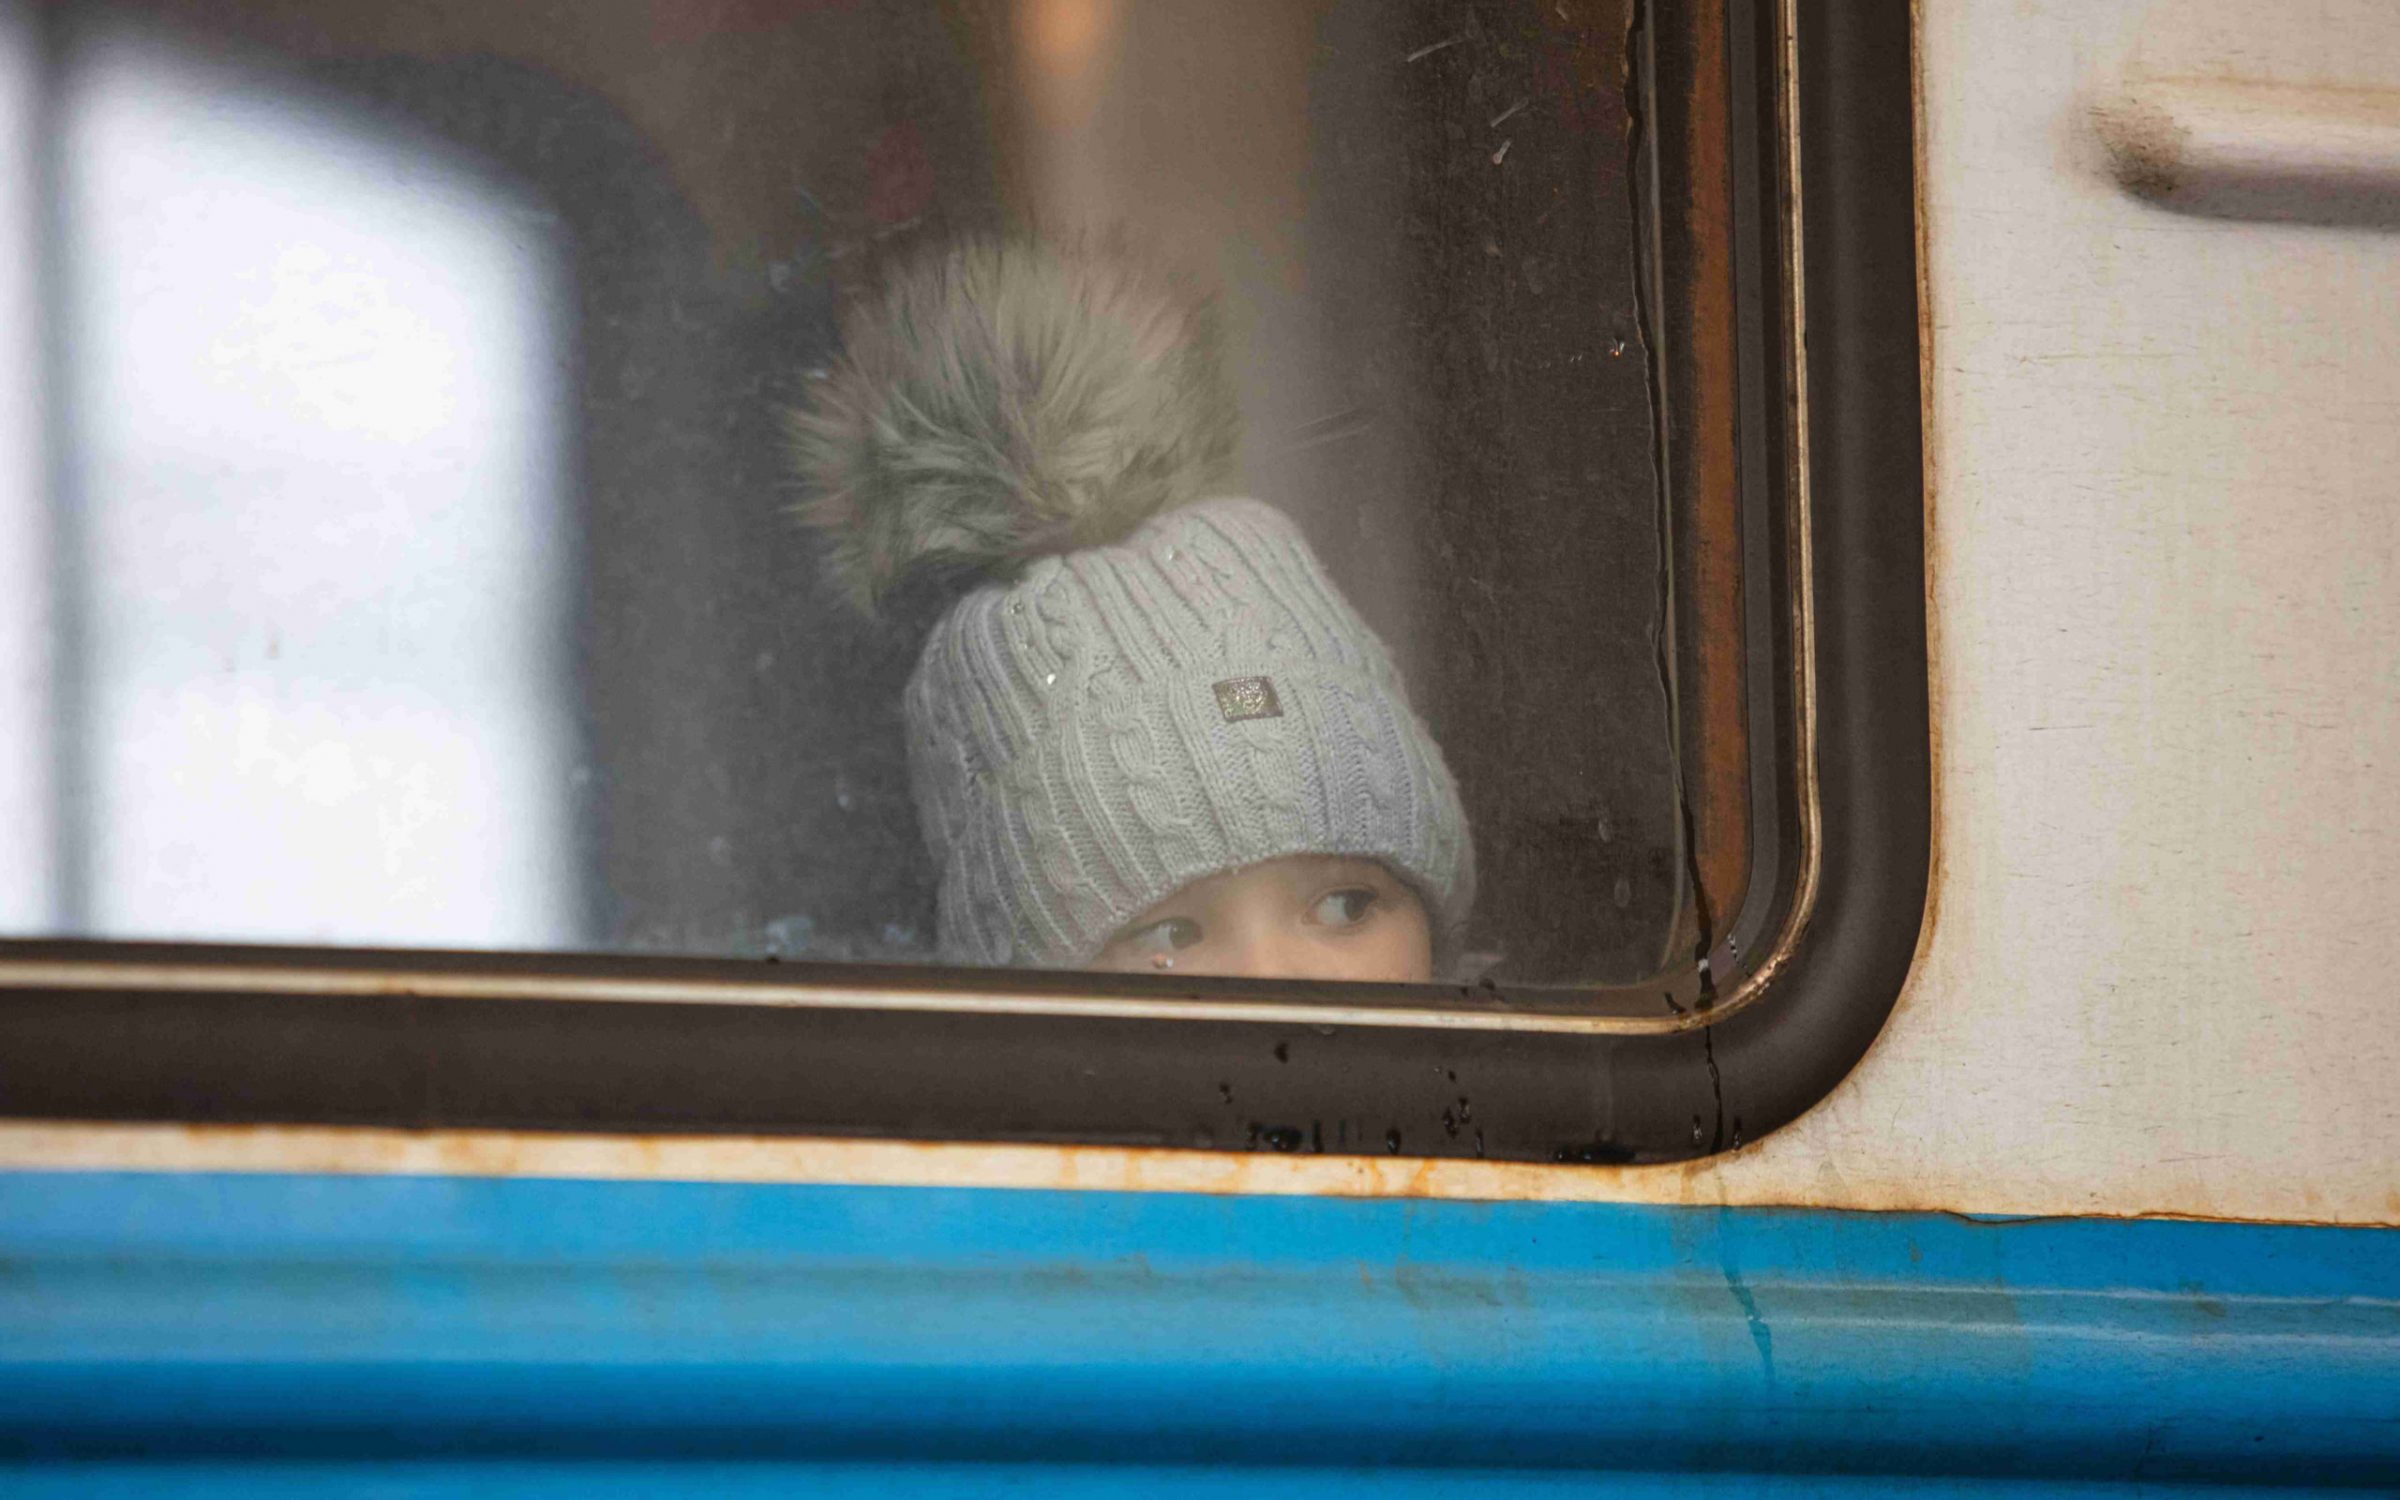 Child on train in Russia